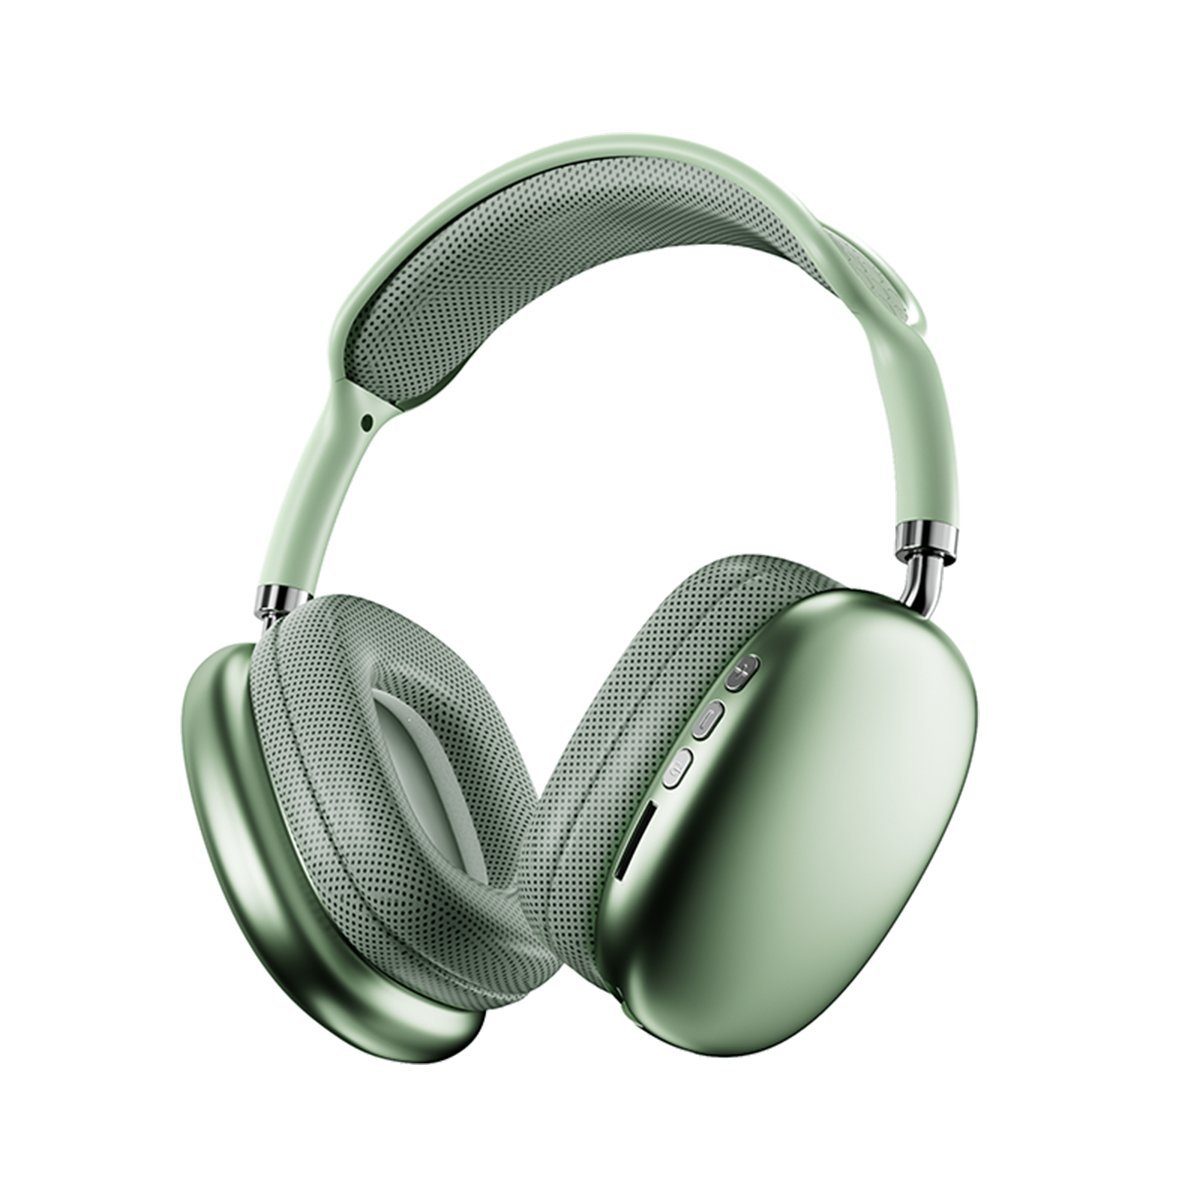 für Diida Bluetooth-Headset, Grün Sport-Kopfhörer) Musik, Funk-Kopfhörer (Geräuschunterdrückung, Headset Stereo-Kopfhörer, Kabelloses Gaming-Headset